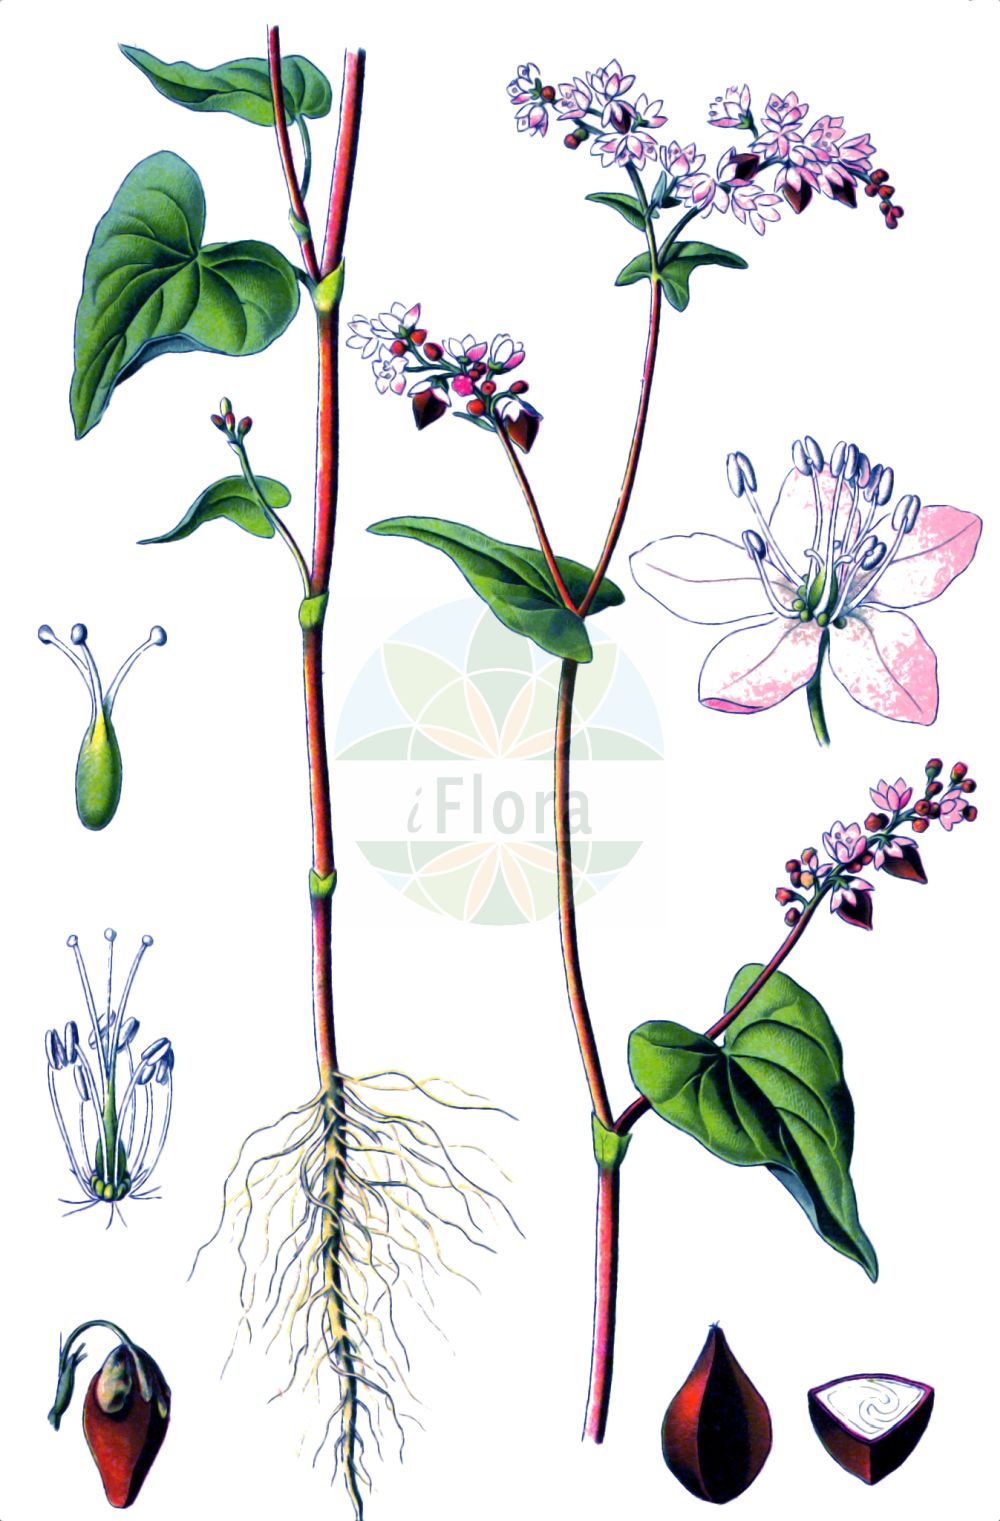 Historische Abbildung von Fagopyrum esculentum (Echter Buchweizen - Buckwheat). Das Bild zeigt Blatt, Bluete, Frucht und Same. ---- Historical Drawing of Fagopyrum esculentum (Echter Buchweizen - Buckwheat). The image is showing leaf, flower, fruit and seed.(Fagopyrum esculentum,Echter Buchweizen,Buckwheat,Fagopyrum esculentum,Fagopyrum sagittatum,Fagopyrum vulgare,Polygonum fagopyrum,Echter Buchweizen,Heidekorn,Buckwheat,Common Buckwheat,Fagopyrum,Buchweizen,Buckwheat,Polygonaceae,Knöterichgewächse,Knotgrass family,Blatt,Bluete,Frucht,Same,leaf,flower,fruit,seed,Thomé (1885))